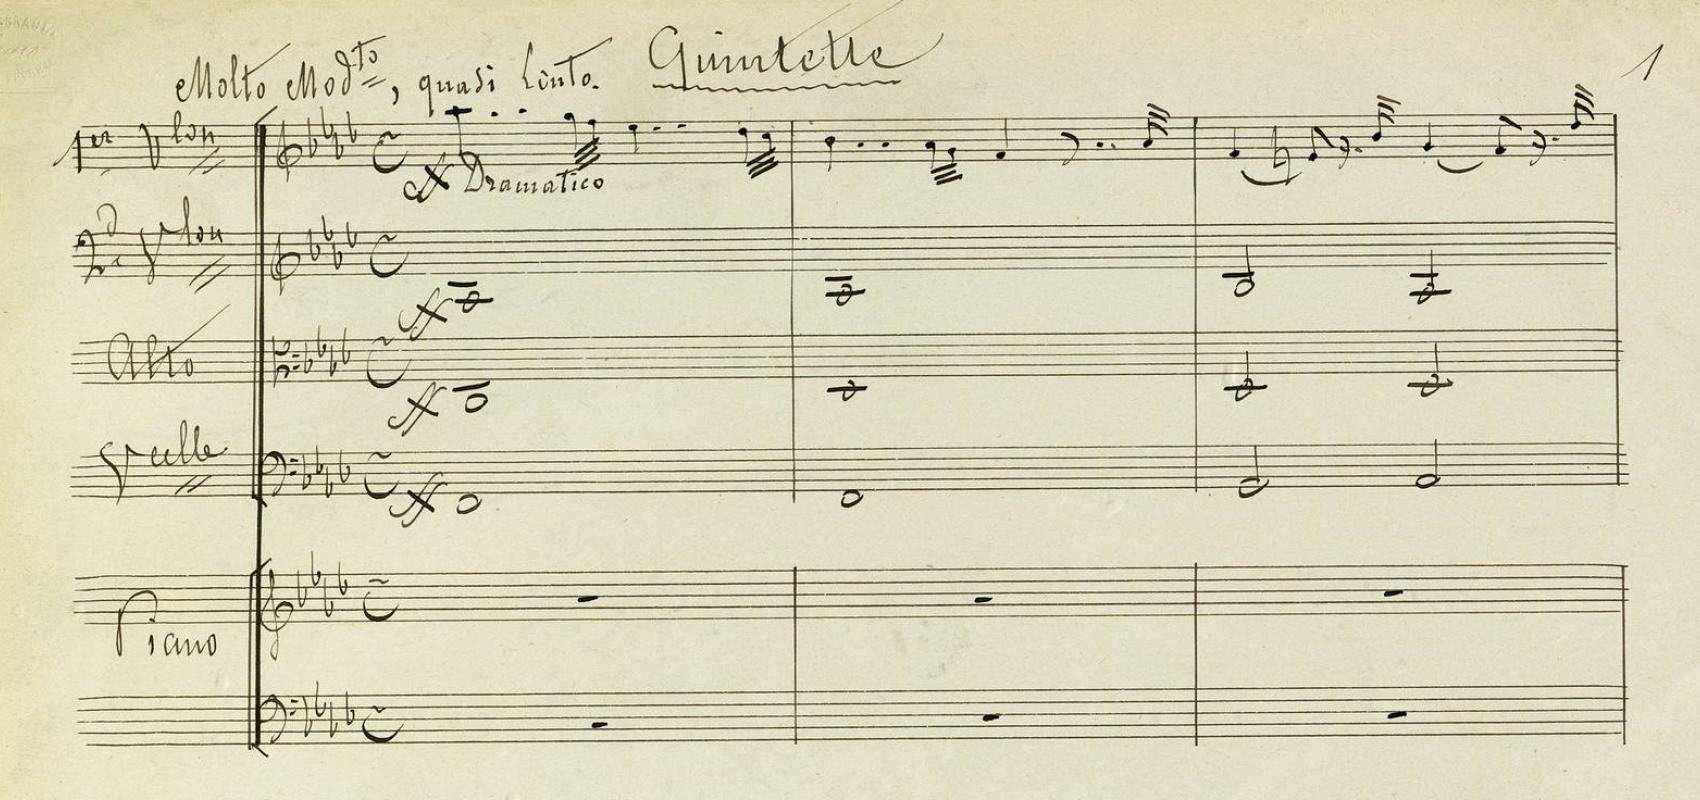 Quintette pour piano, violon, alto et violoncelle par César Franck -  - BnF, département de la Musique